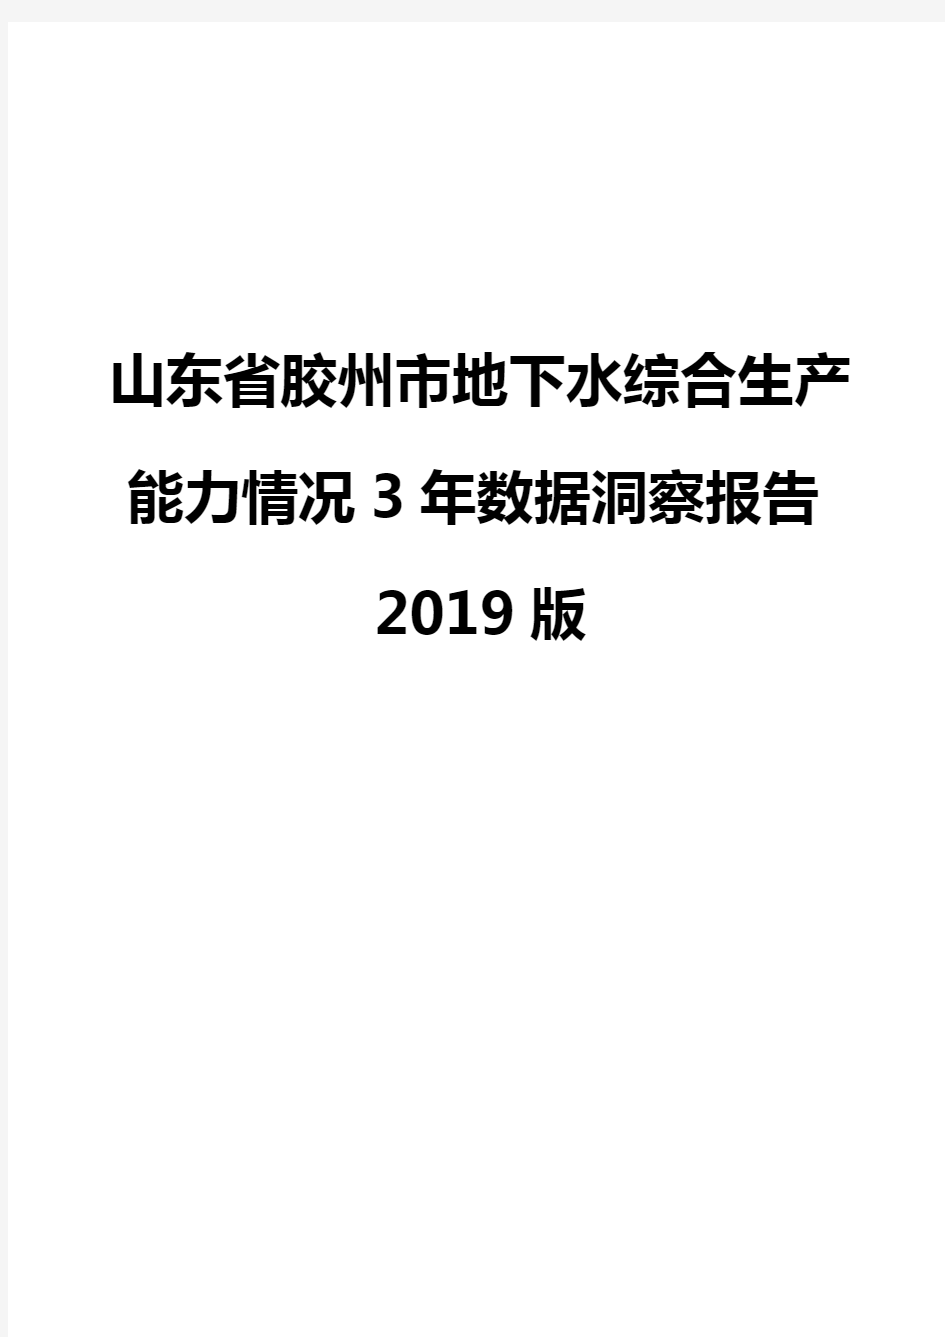 山东省胶州市地下水综合生产能力情况3年数据洞察报告2019版